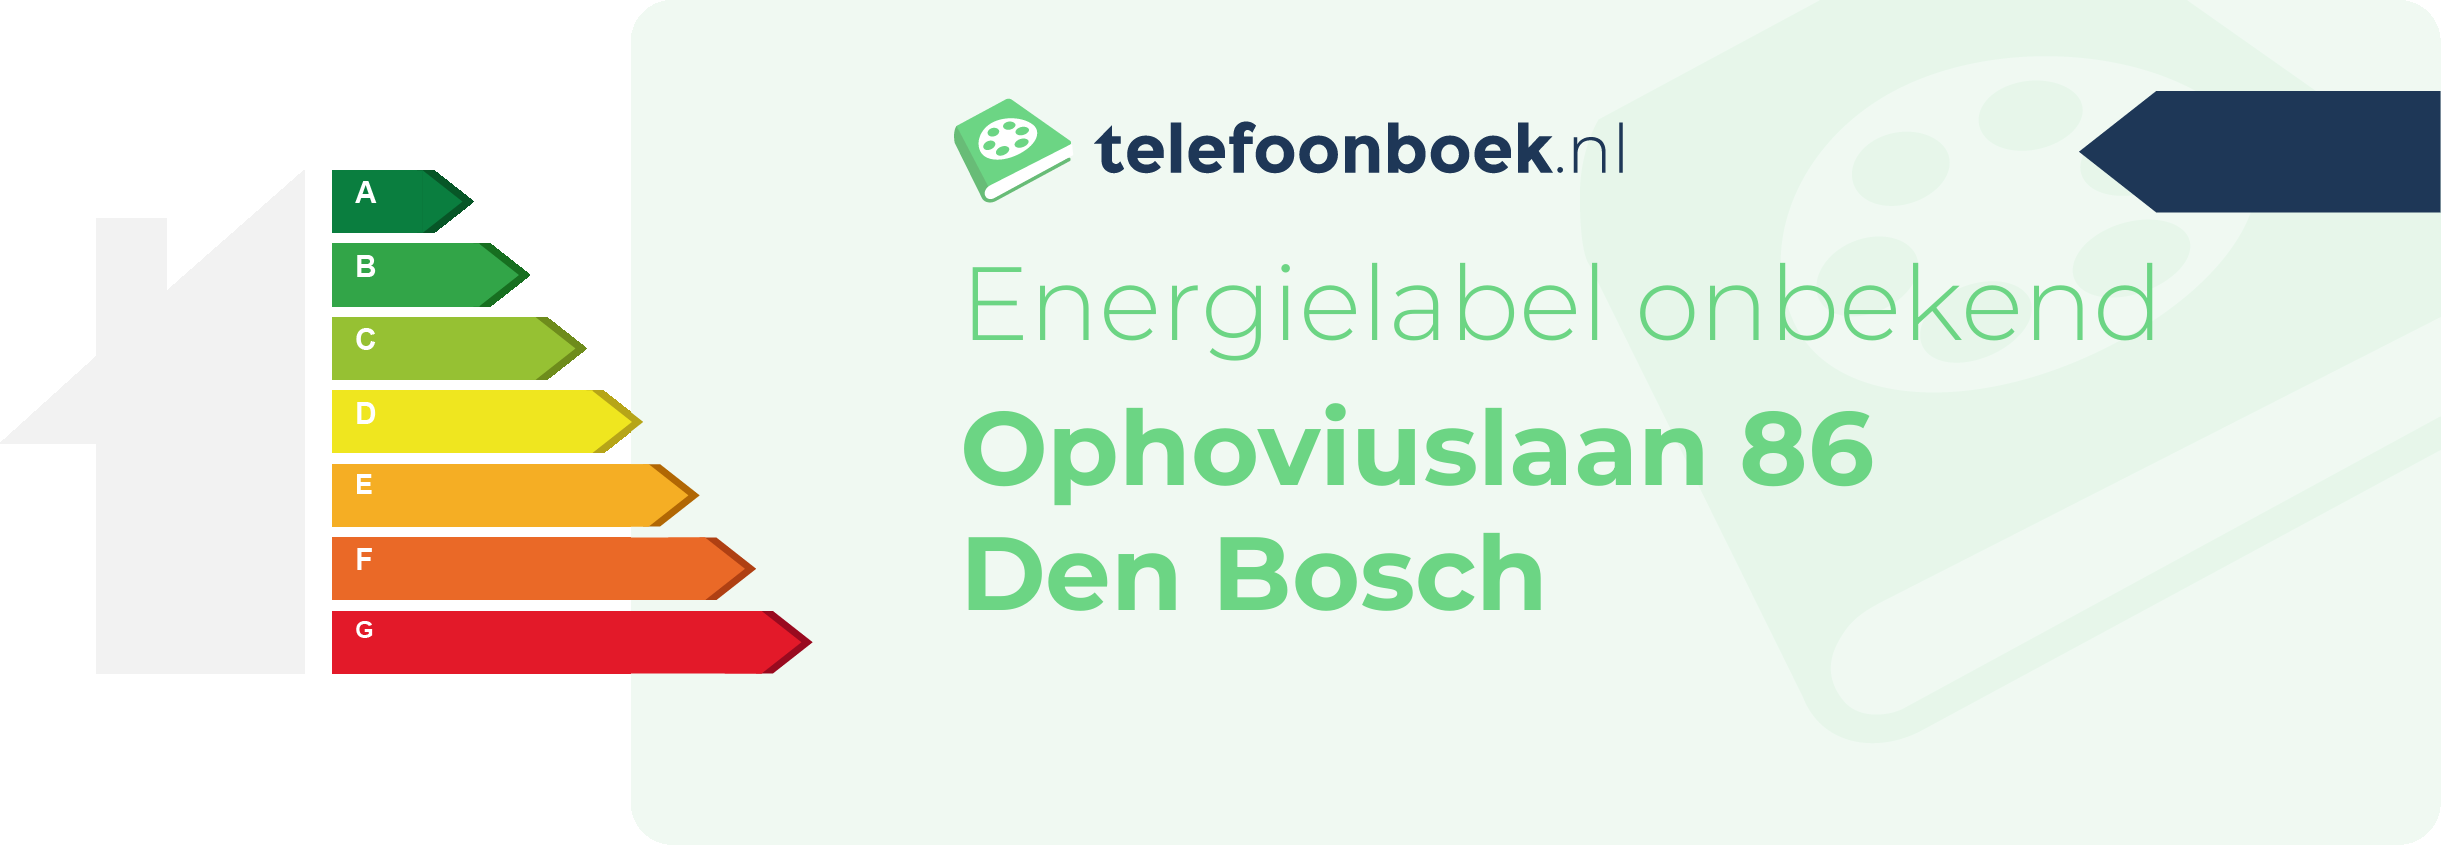 Energielabel Ophoviuslaan 86 Den Bosch